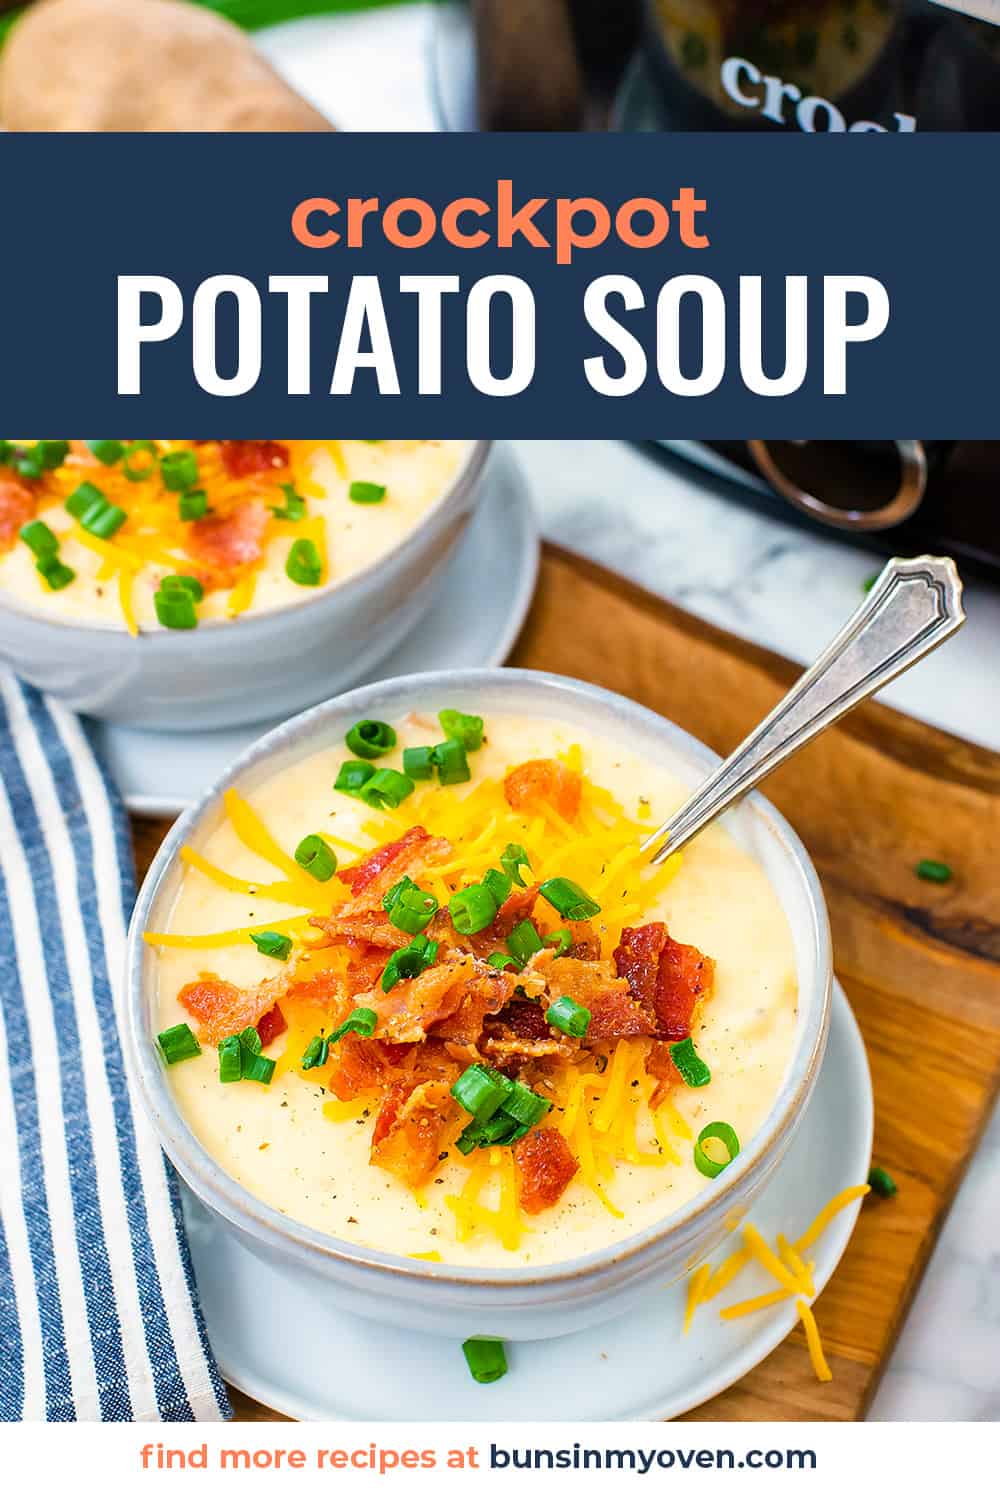 Crock pot potato soup in bowls.